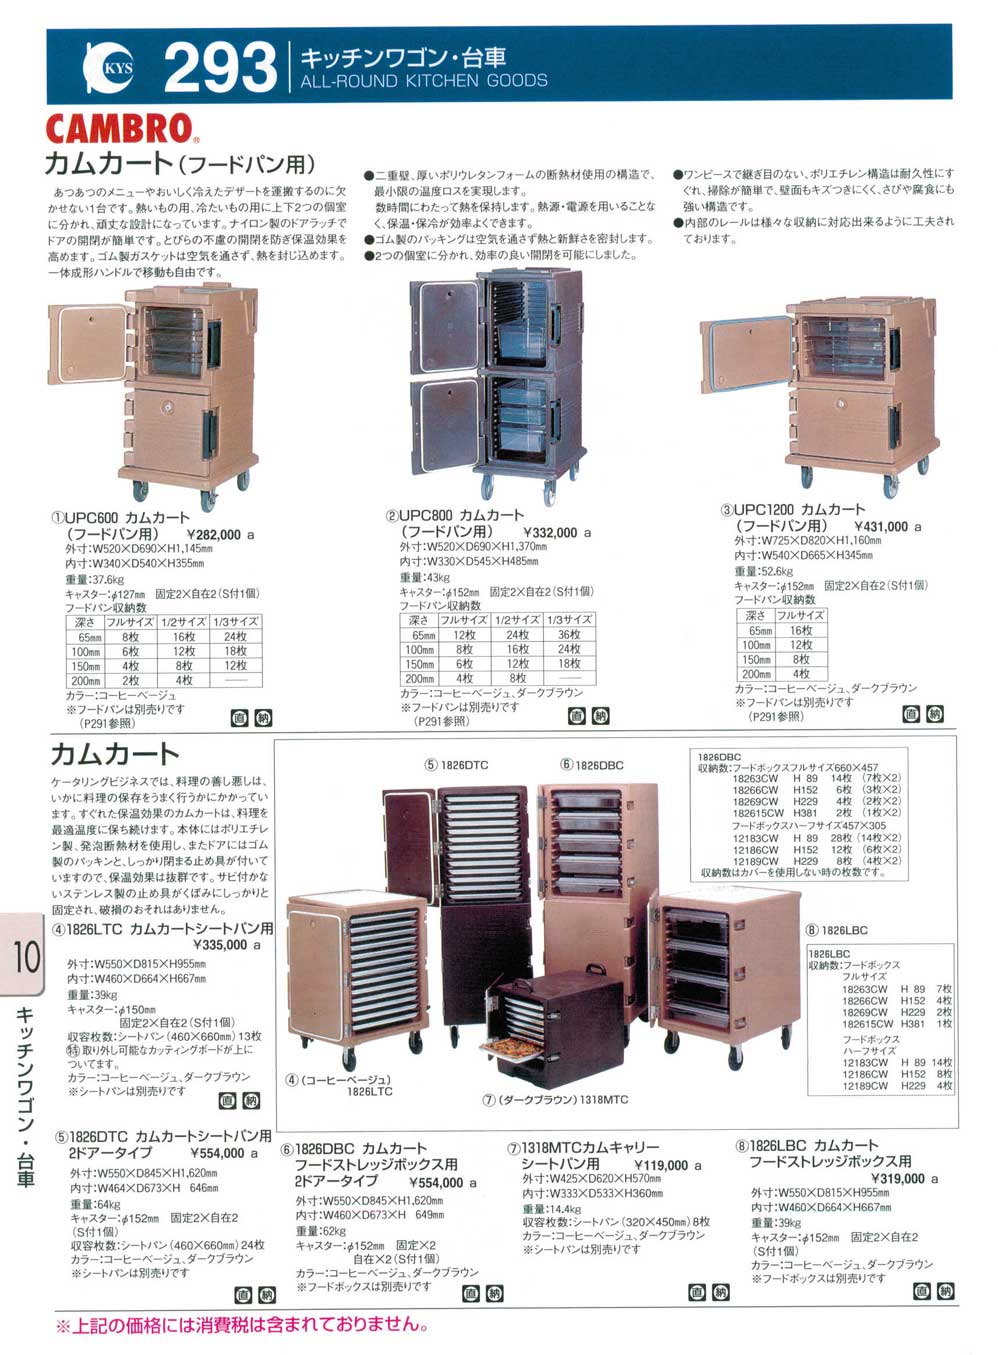 限定Special Price フードストレイジボックス 18266CW 135 キャンブロ ホテルパン fujimembers.saloon.jp